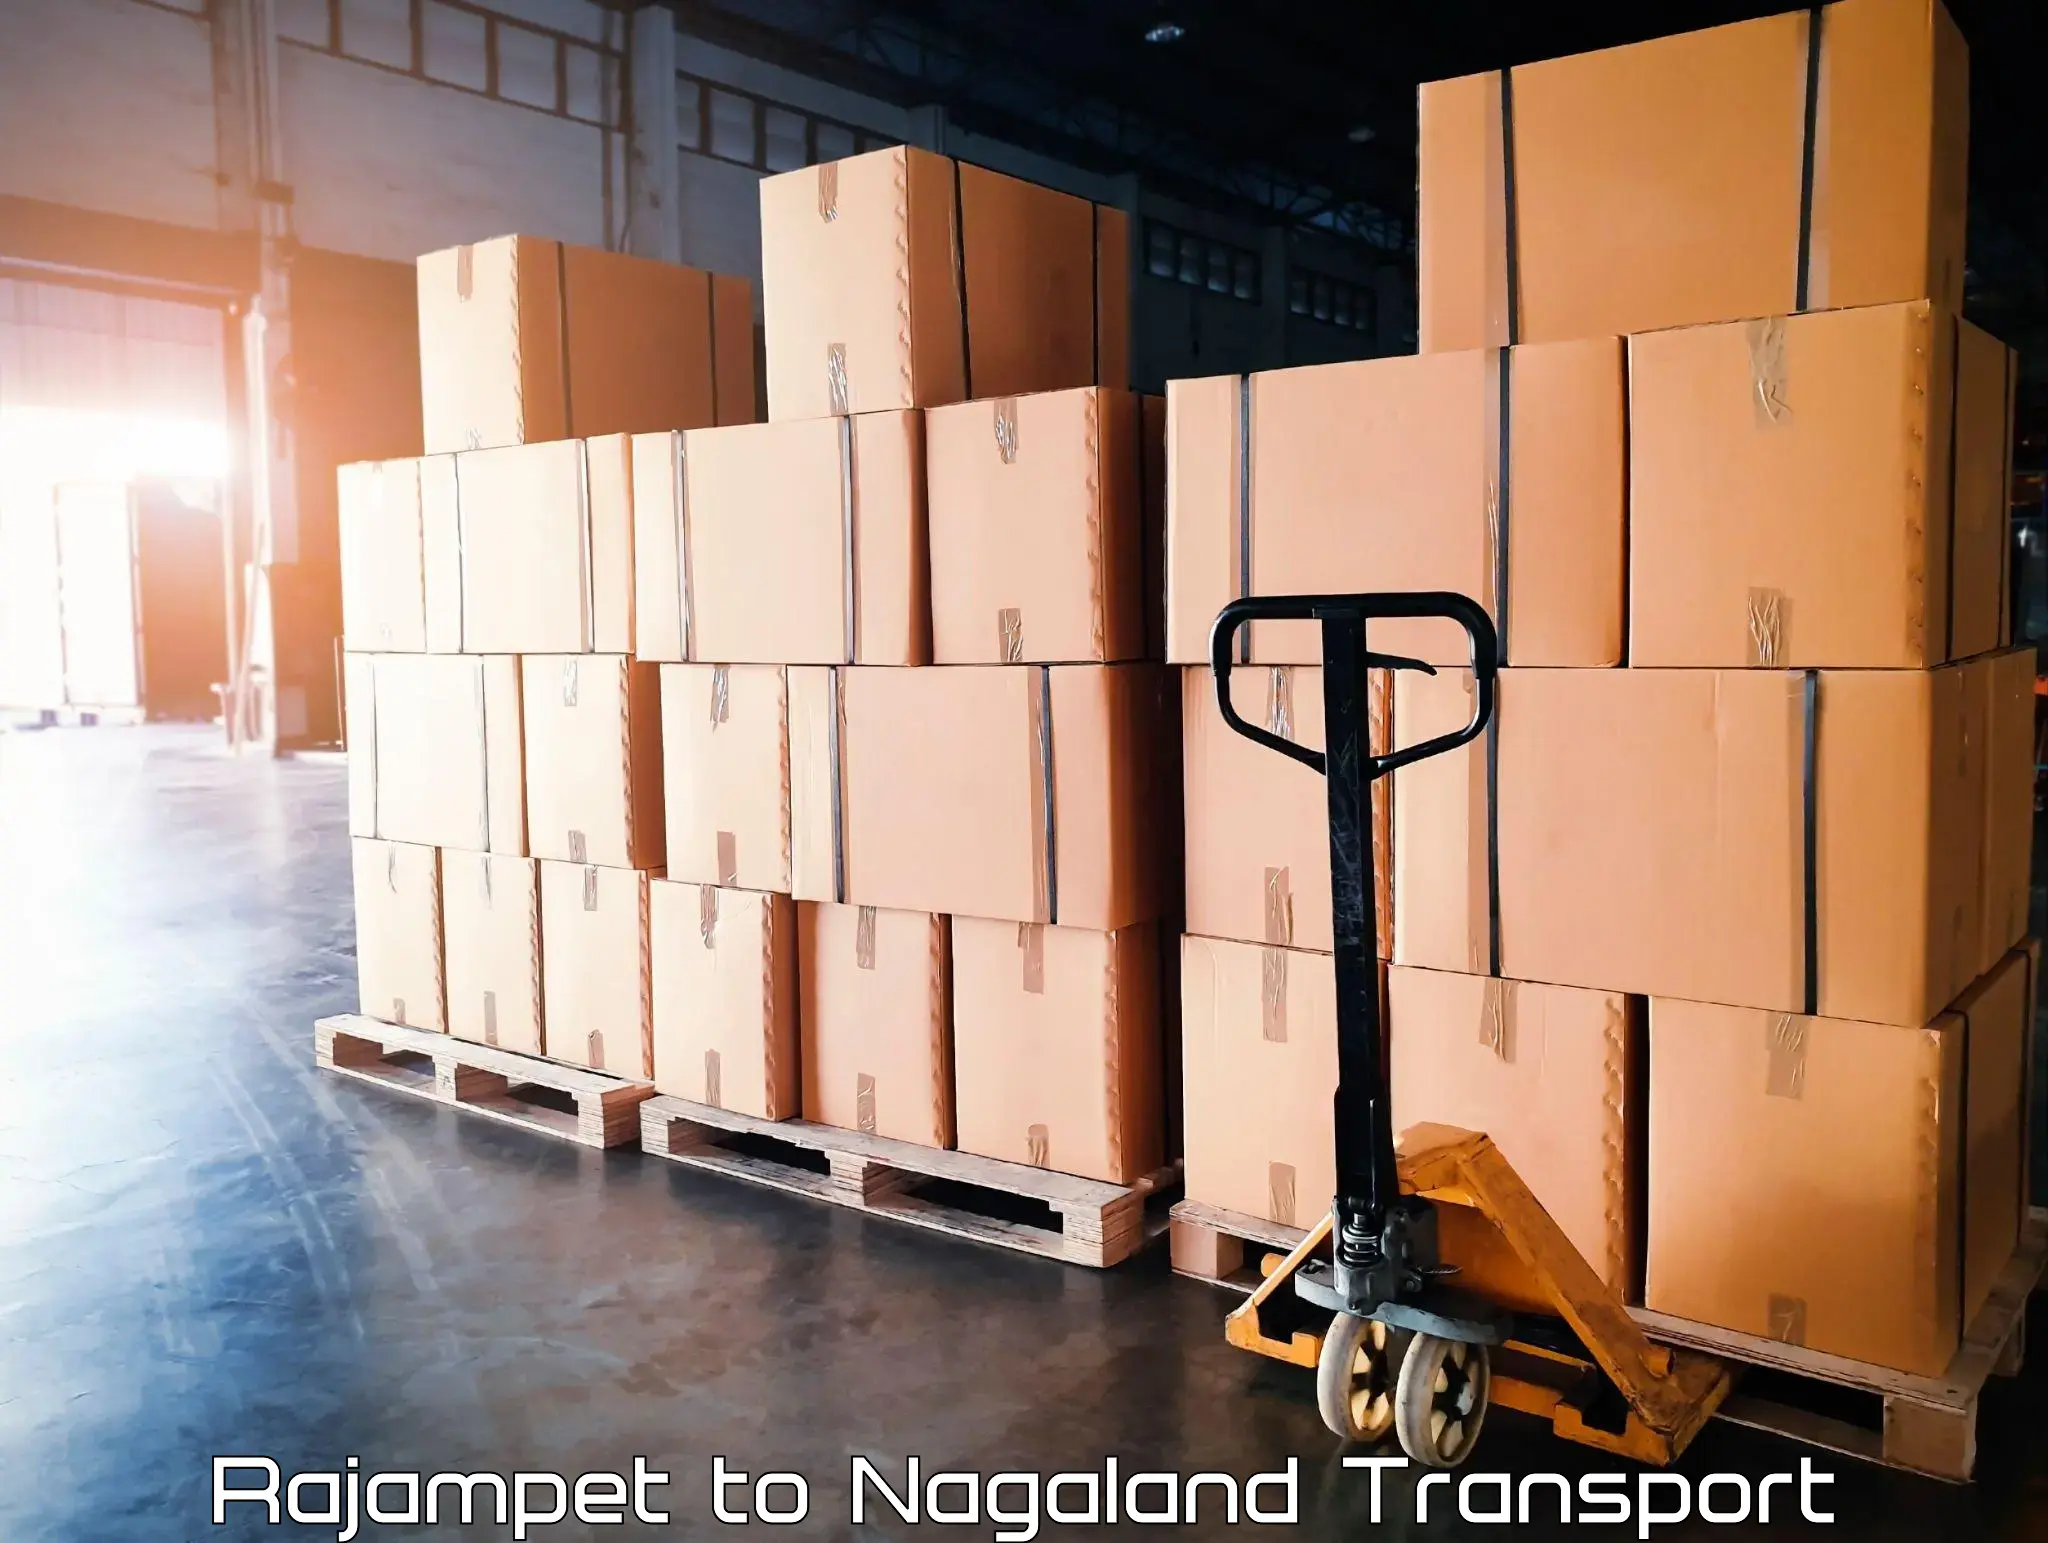 Transport shared services Rajampet to Nagaland